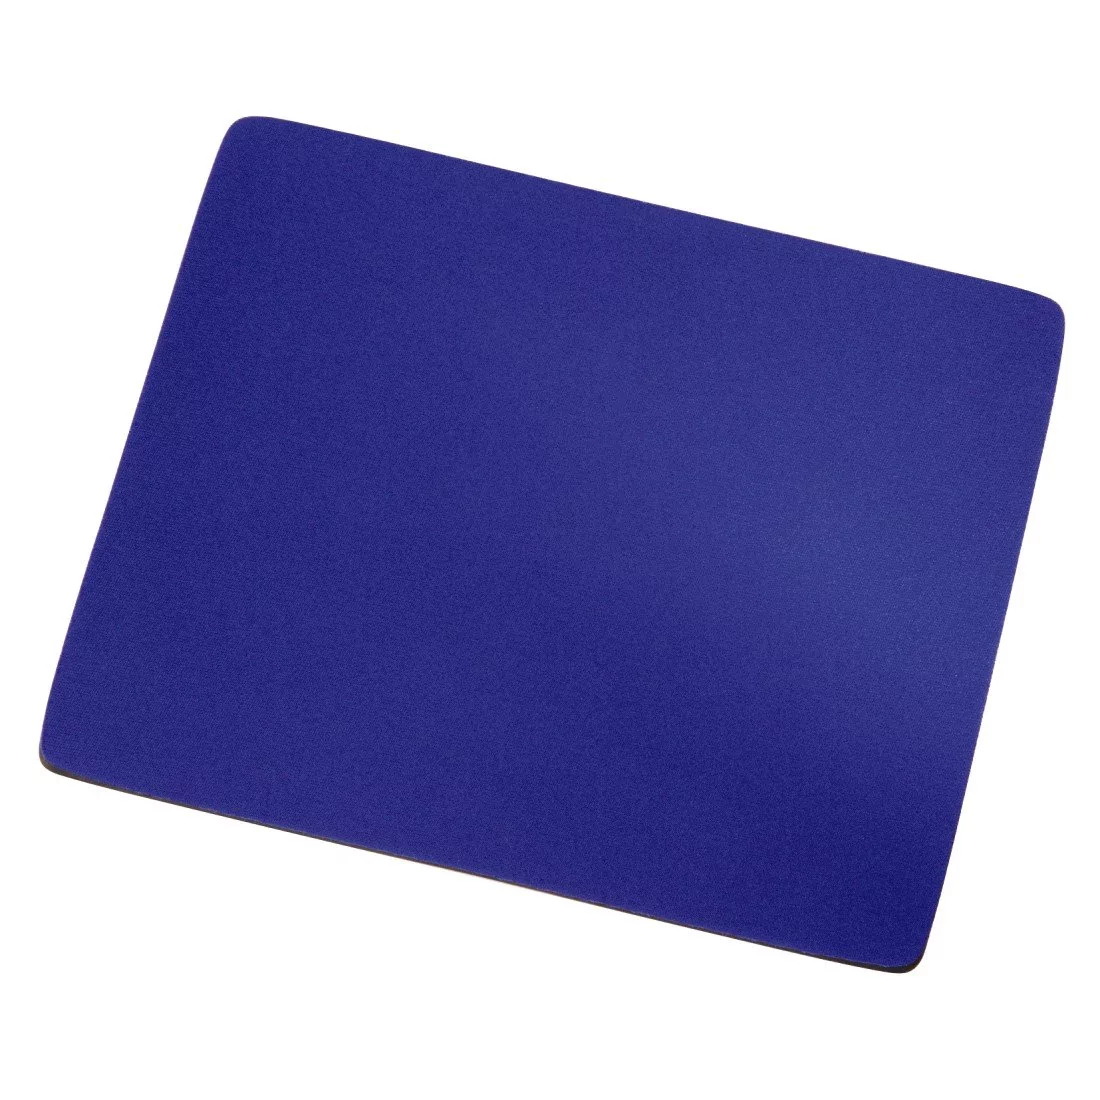 Hama MousePad Display - Niebieska (54768)